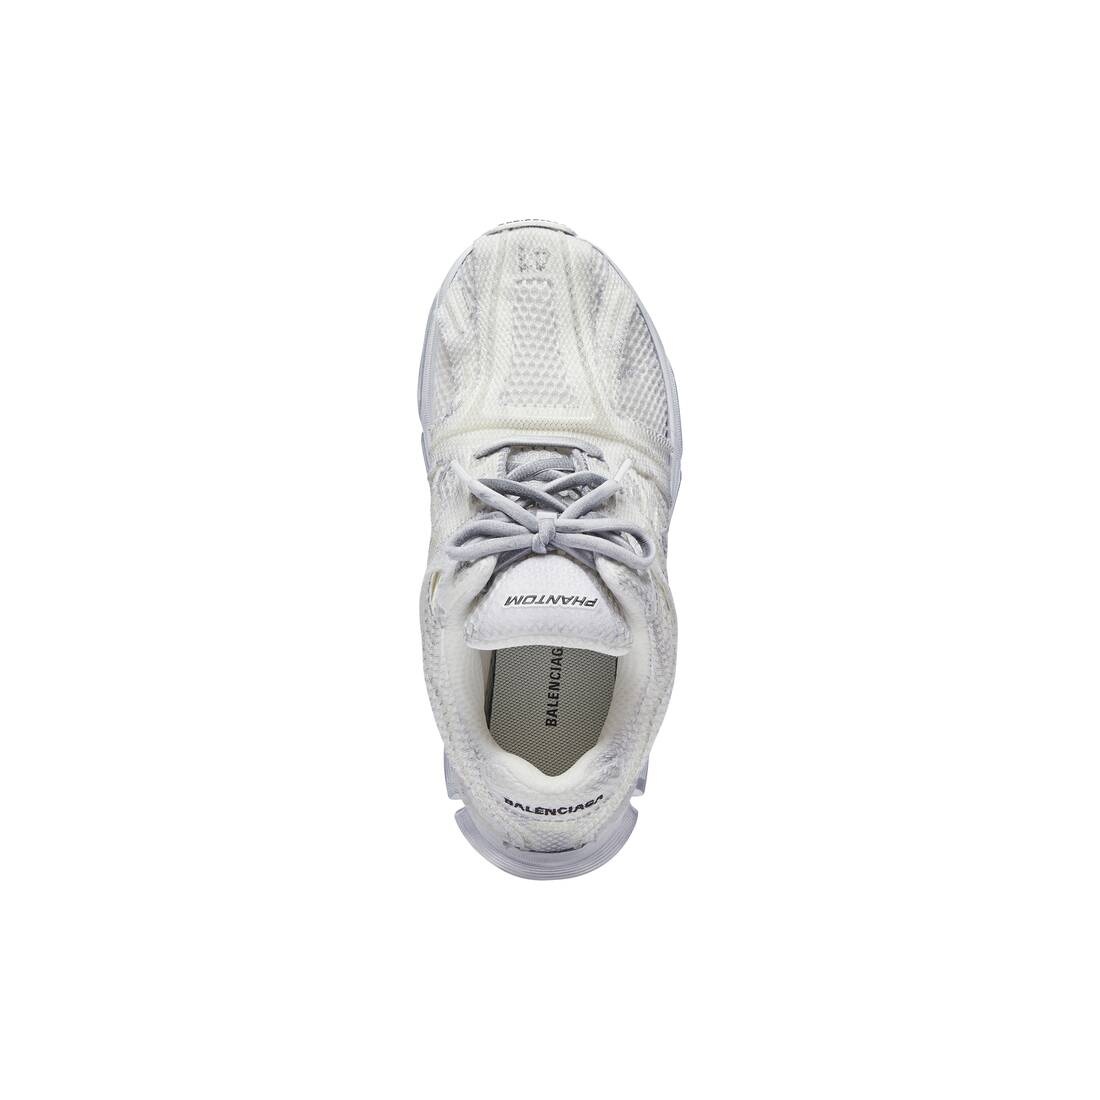 Men's Phantom Sneaker Washed in White - 5